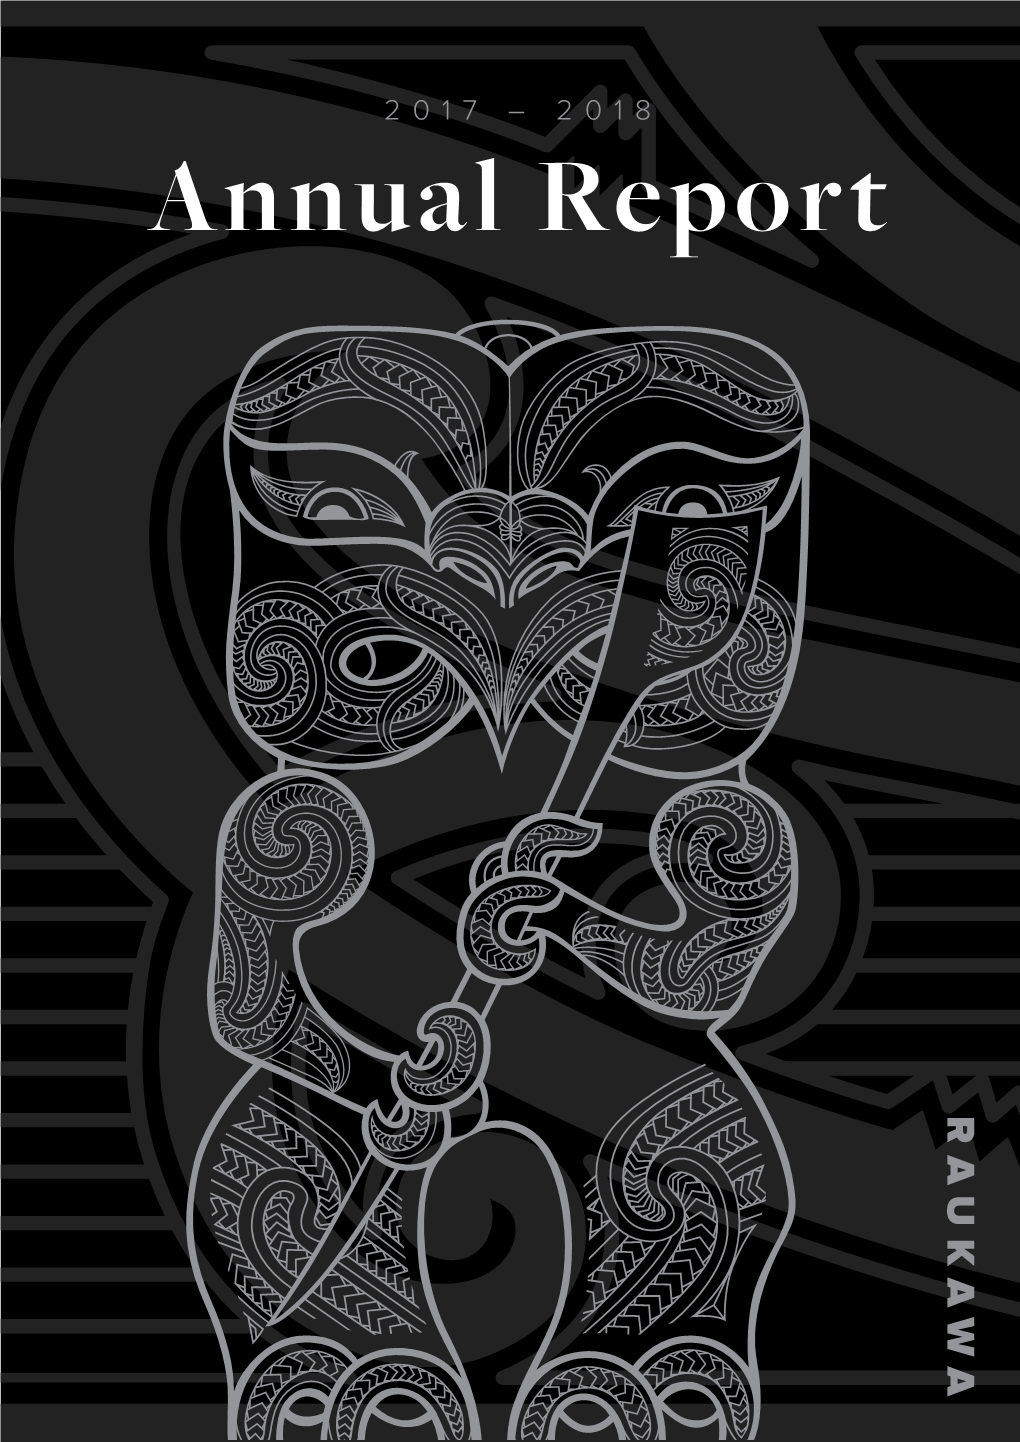 Annual Report Te Whare O Raukawa Main Office, Tokoroa ABOUT US